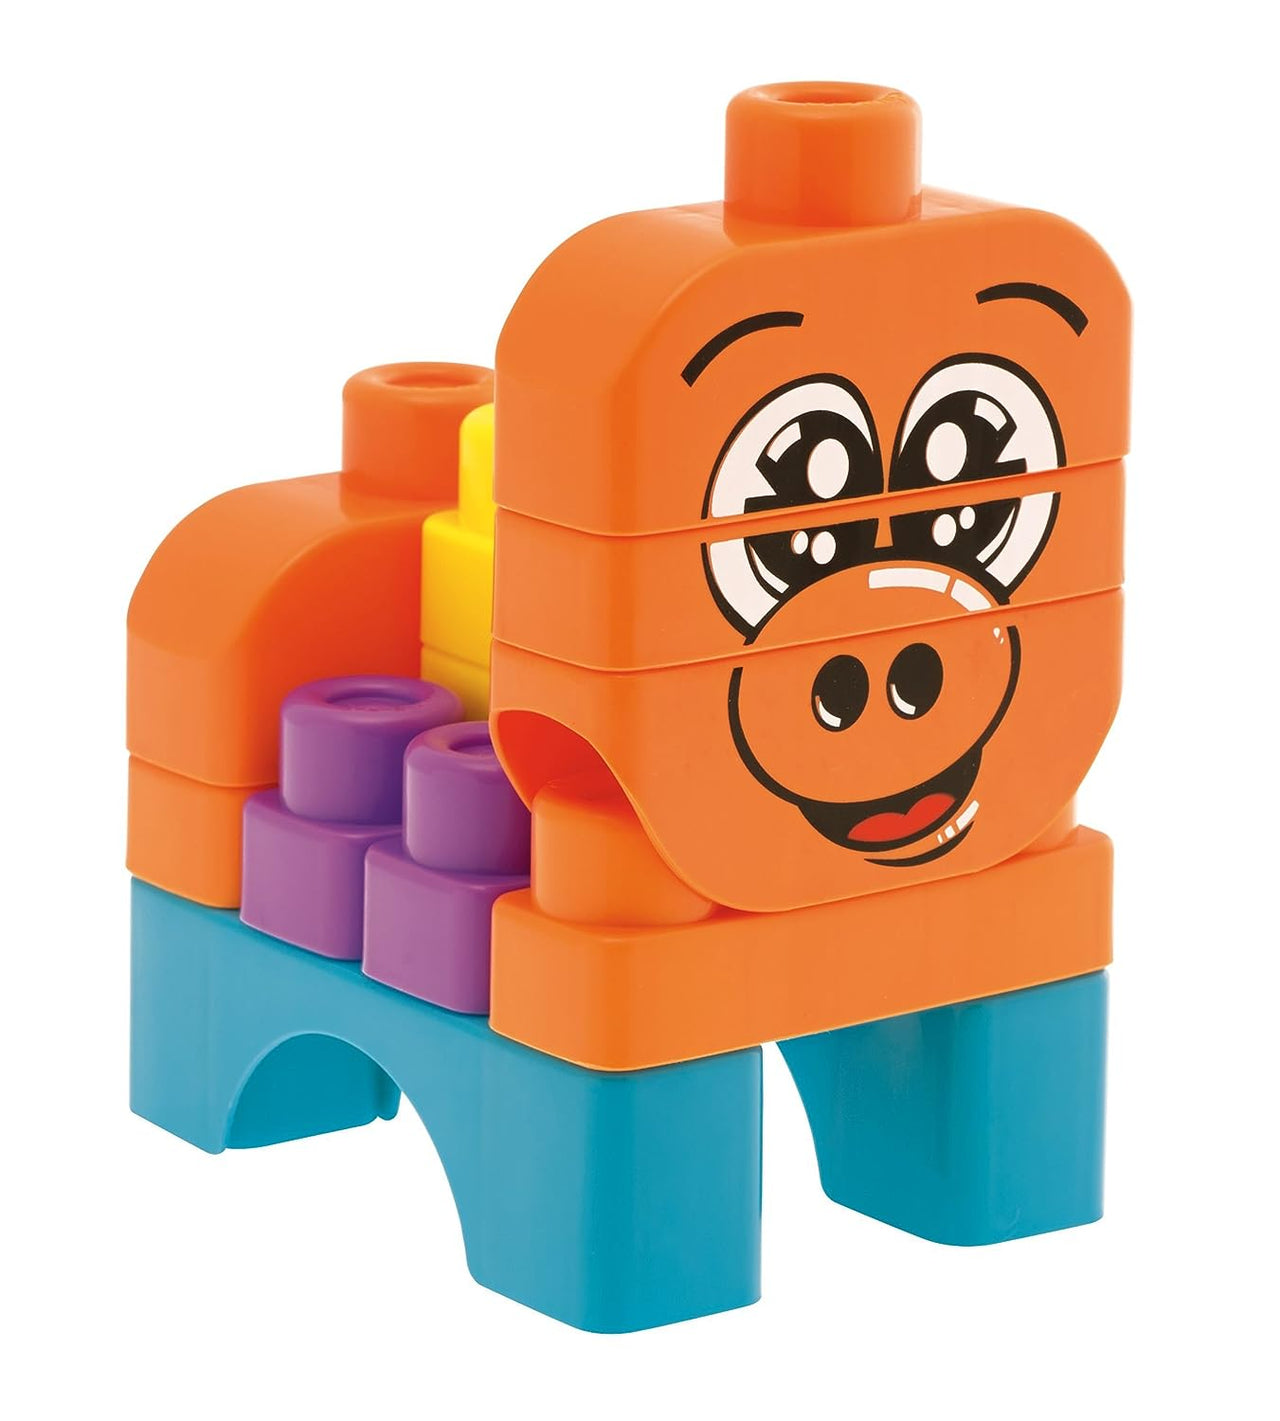 Chicco Toy Building Blocks Animals - 40 Pieces, Multi Color